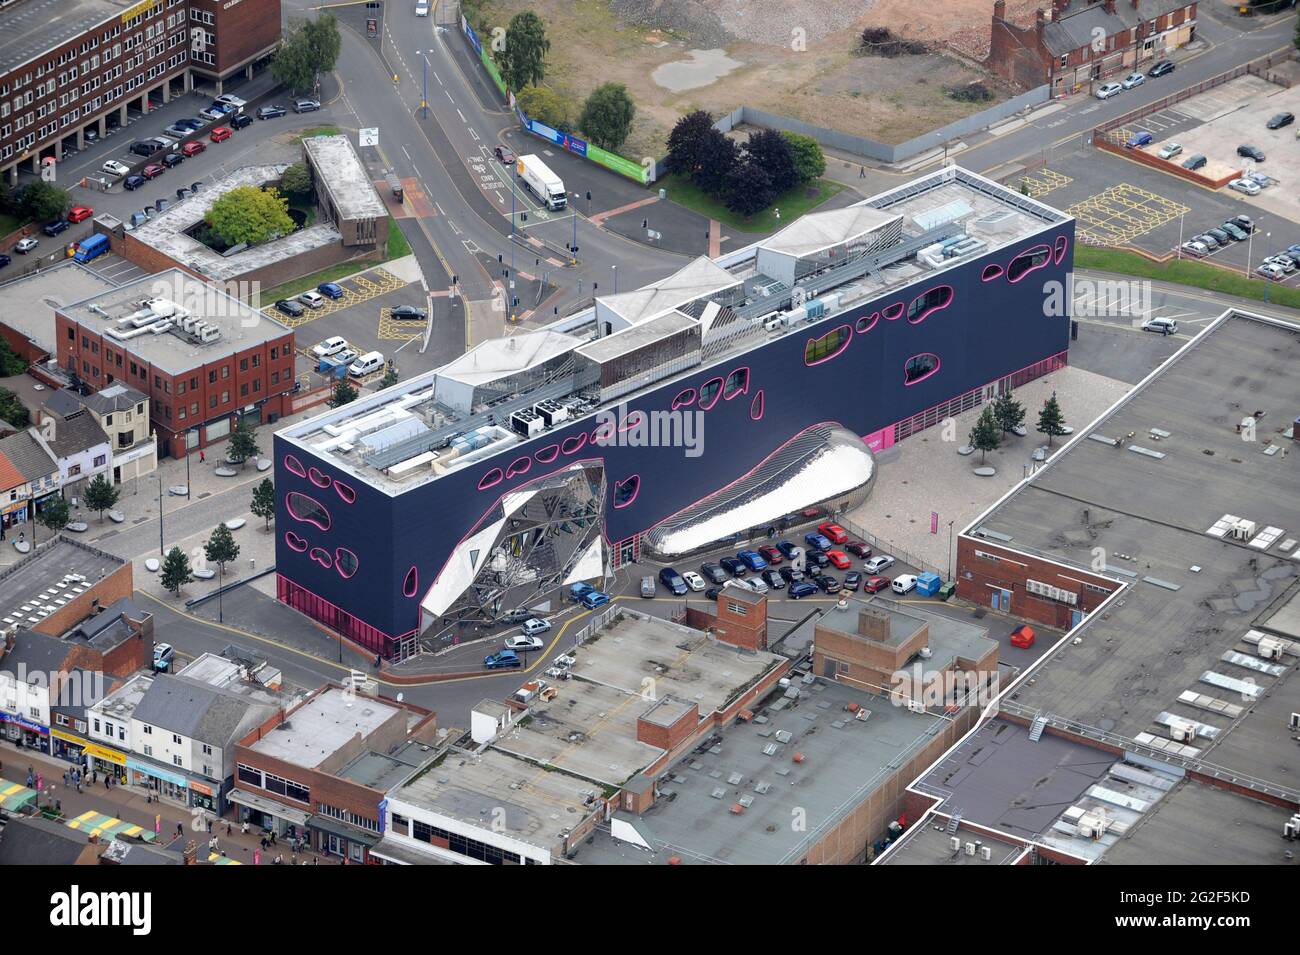 Luftaufnahme des öffentlichen Gebäudes in West Bromwich Sandwell Uk Stockfoto